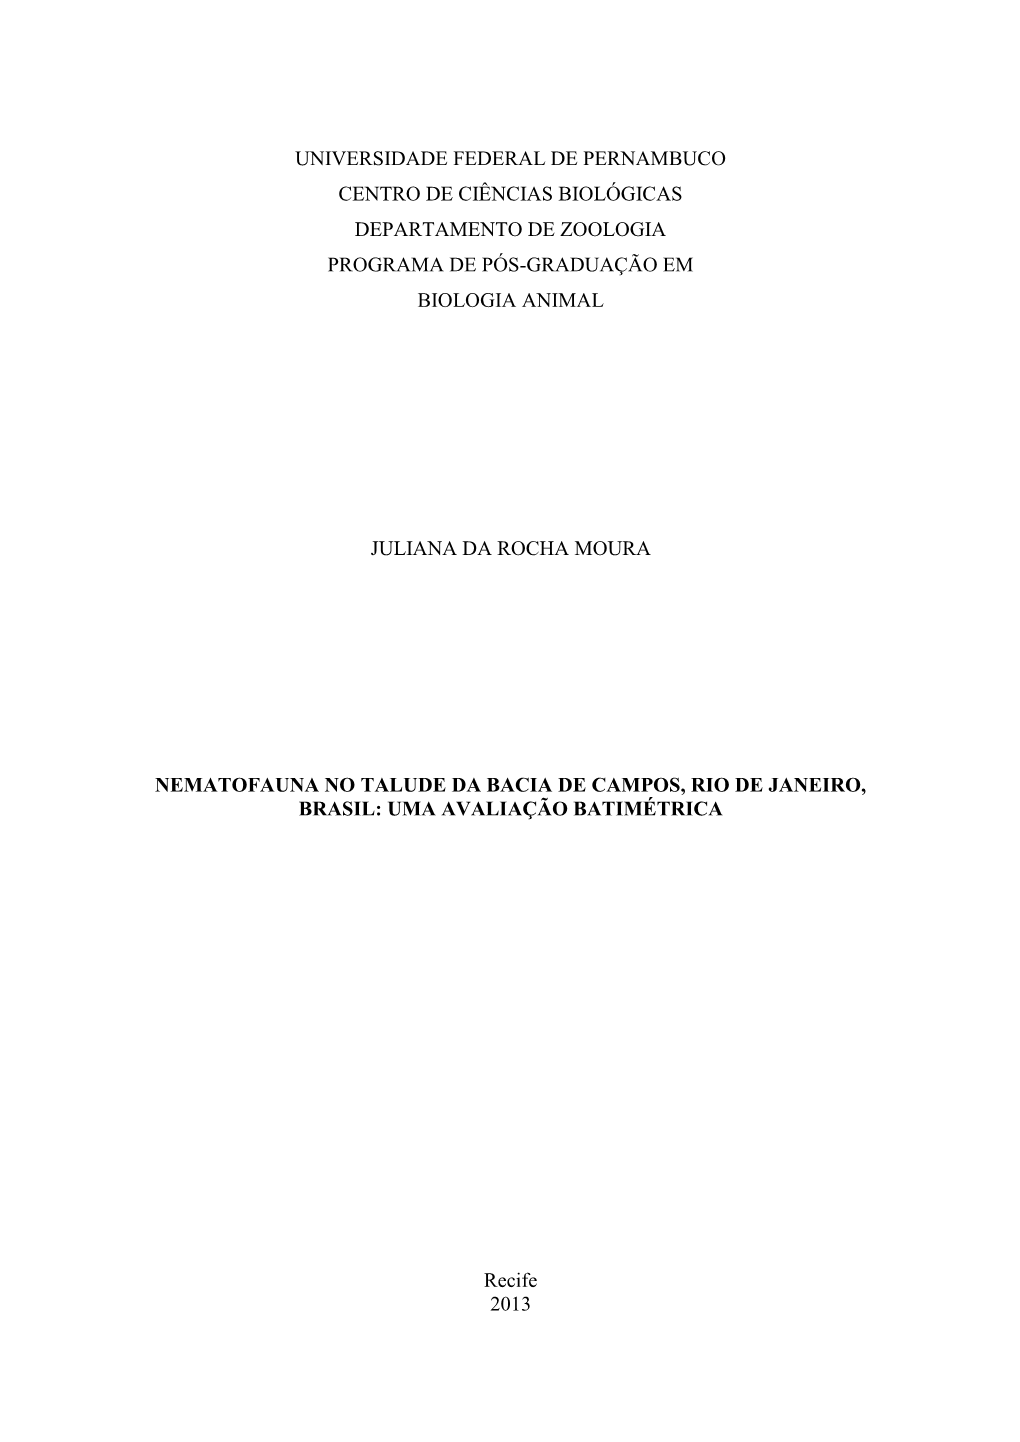 Dissertação Juliana Moura.Pdf